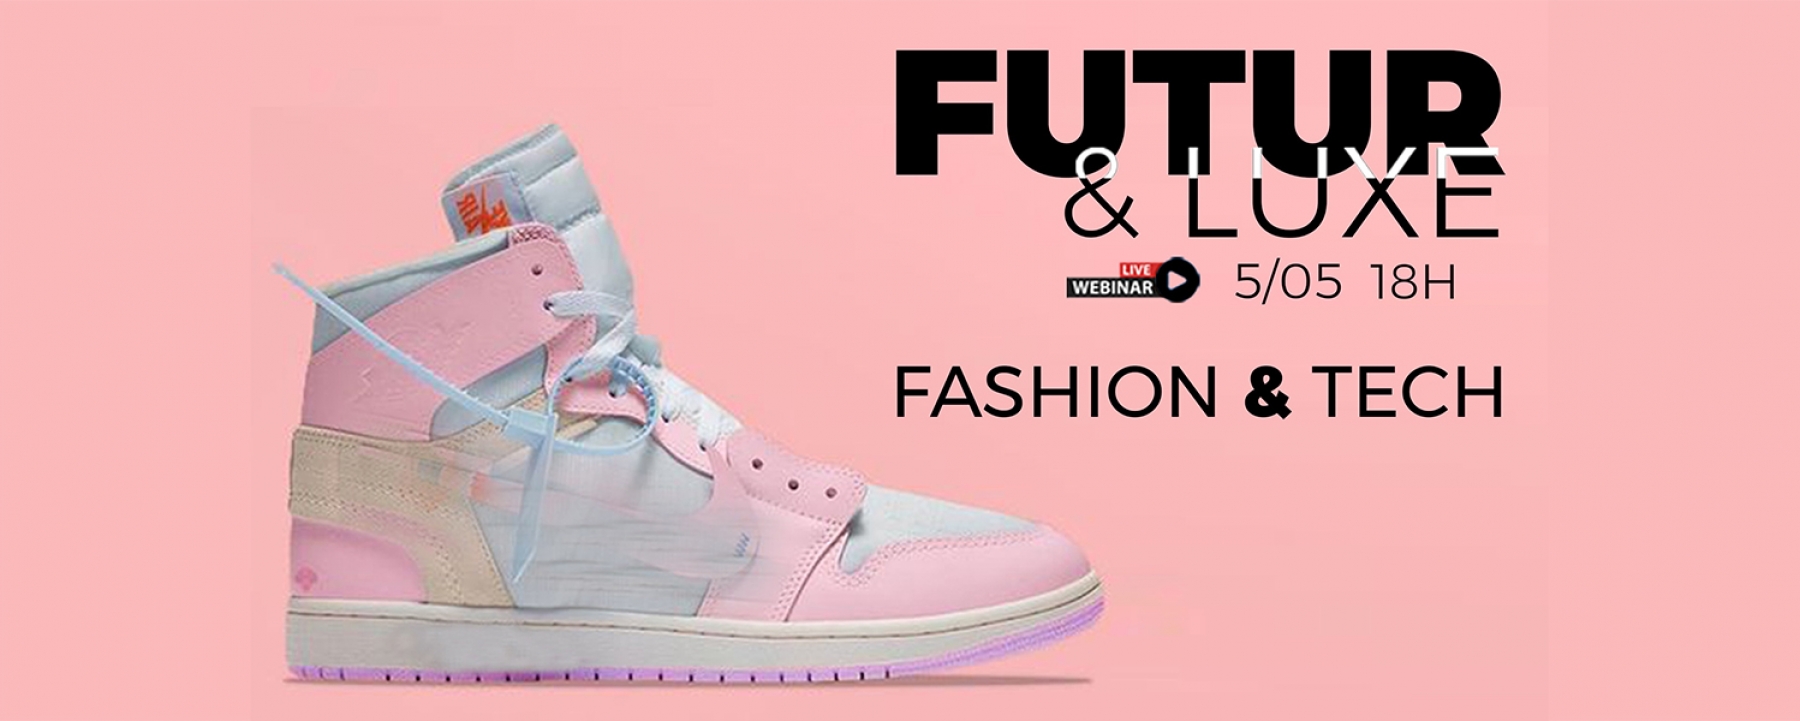 Futur & Luxe : Fashion Tech, organisé par le Journal du Luxe le 5 mai 2021